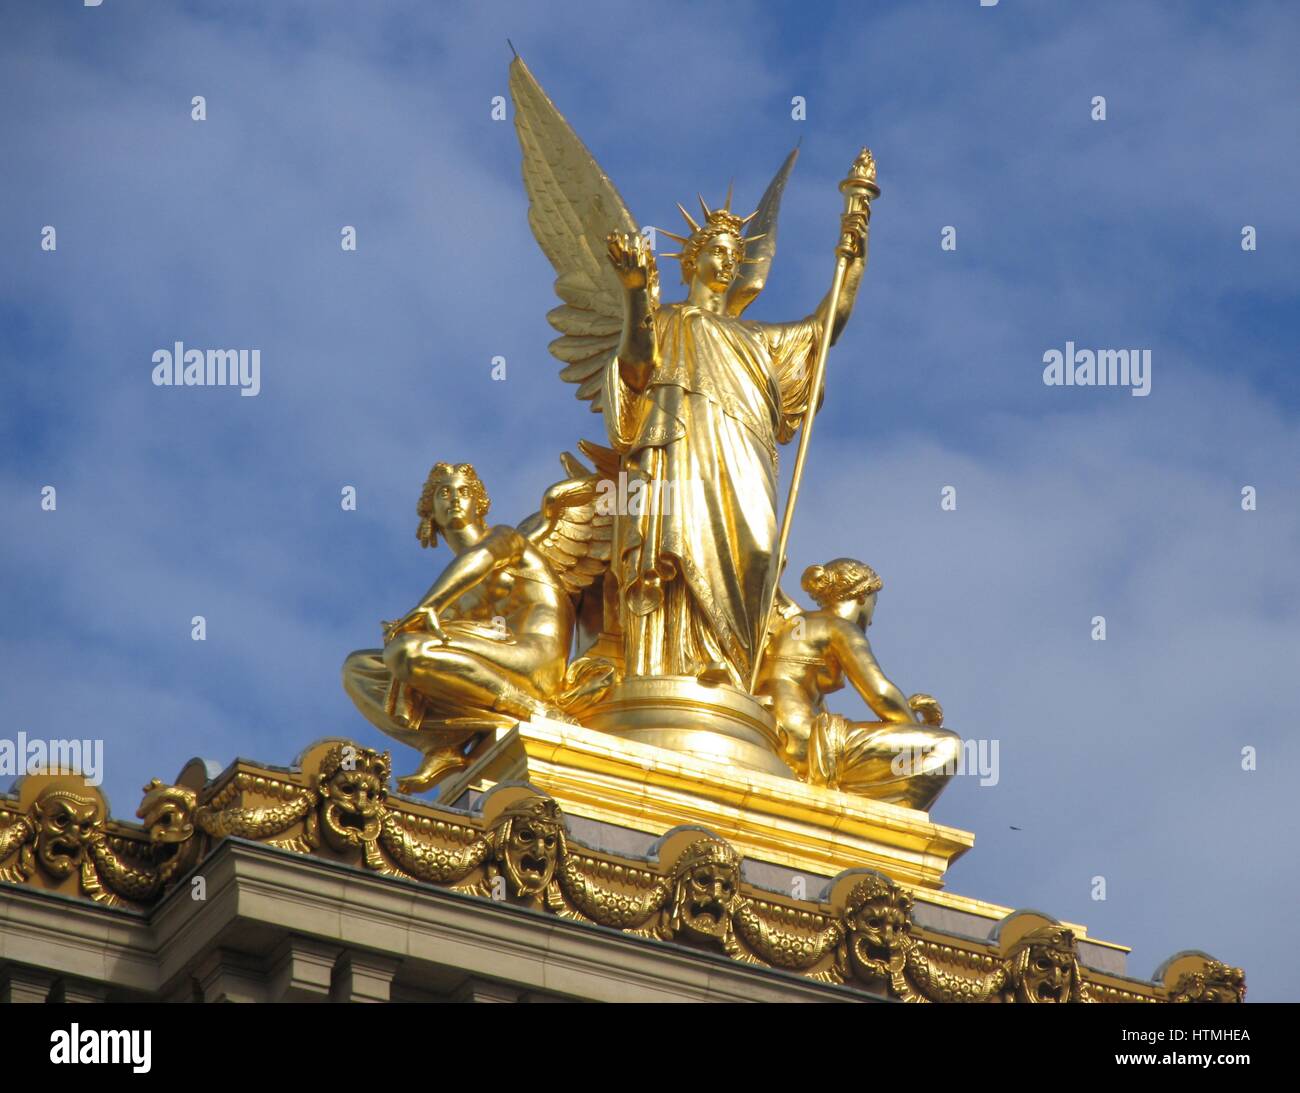 La figure dorée sur le haut de la façade de l'Opéra Garnier, (Opéra de Paris). Banque D'Images